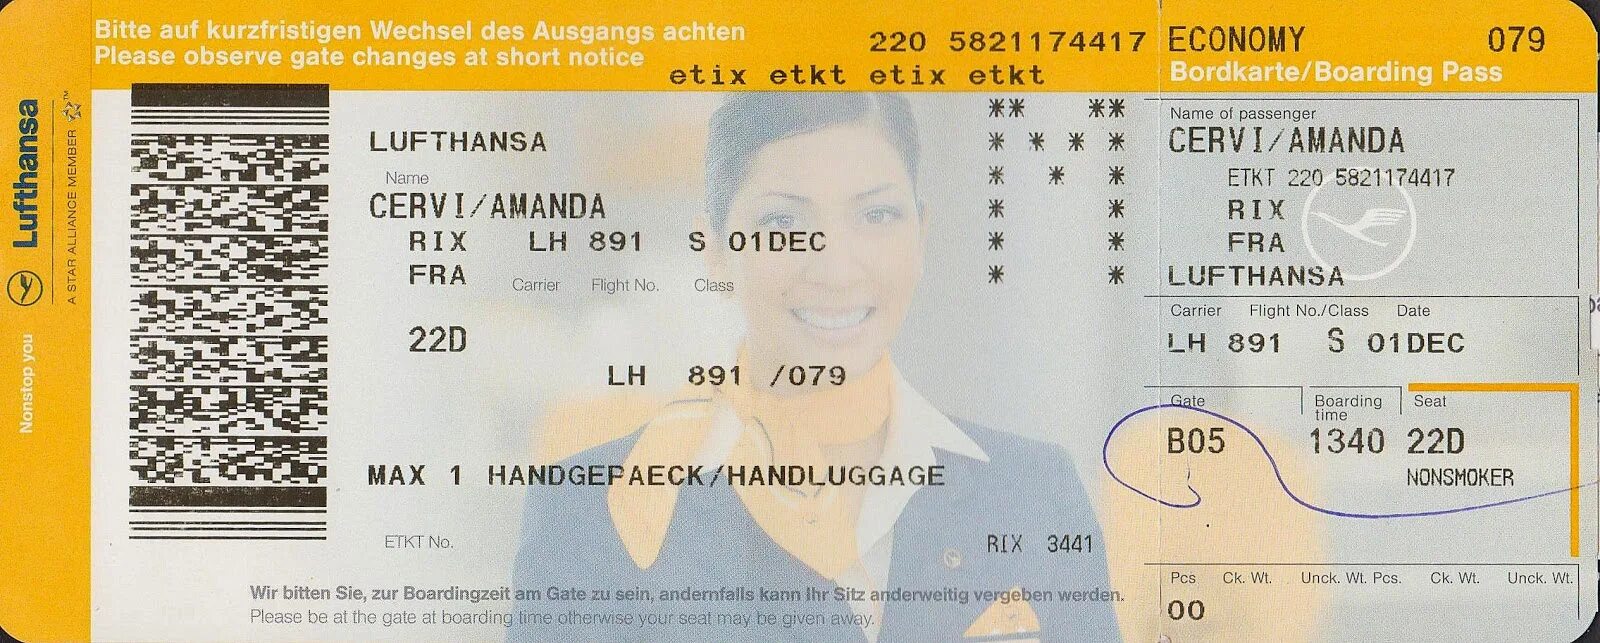 Билет на самолет Люфтганза. Билеты авиакомпании Lufthansa. Посадочный талон Lufthansa. Lufthansa Boarding Pass. Авиабилеты купить люфтганза